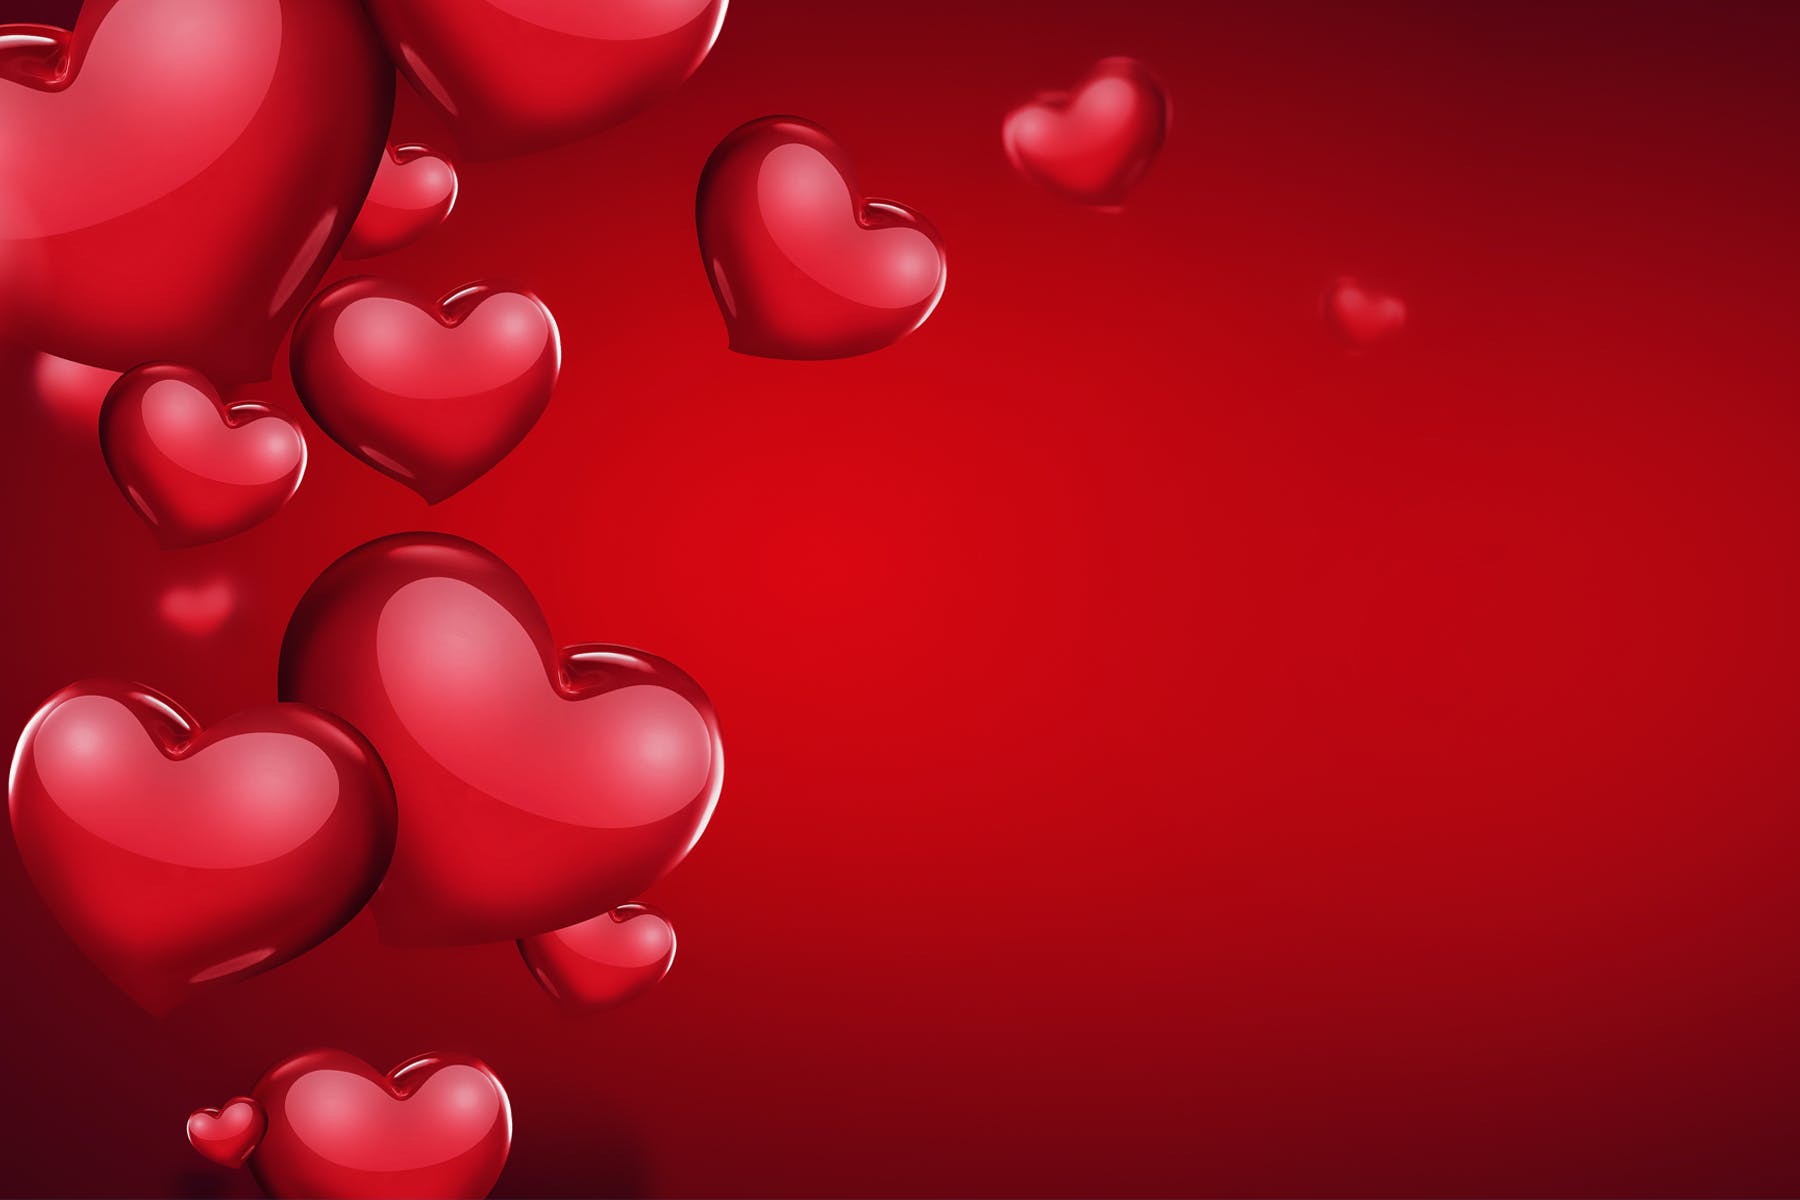 明亮光面心形浪漫红色背景 Romantic Background with Bright Red Hearts 图片素材 第1张